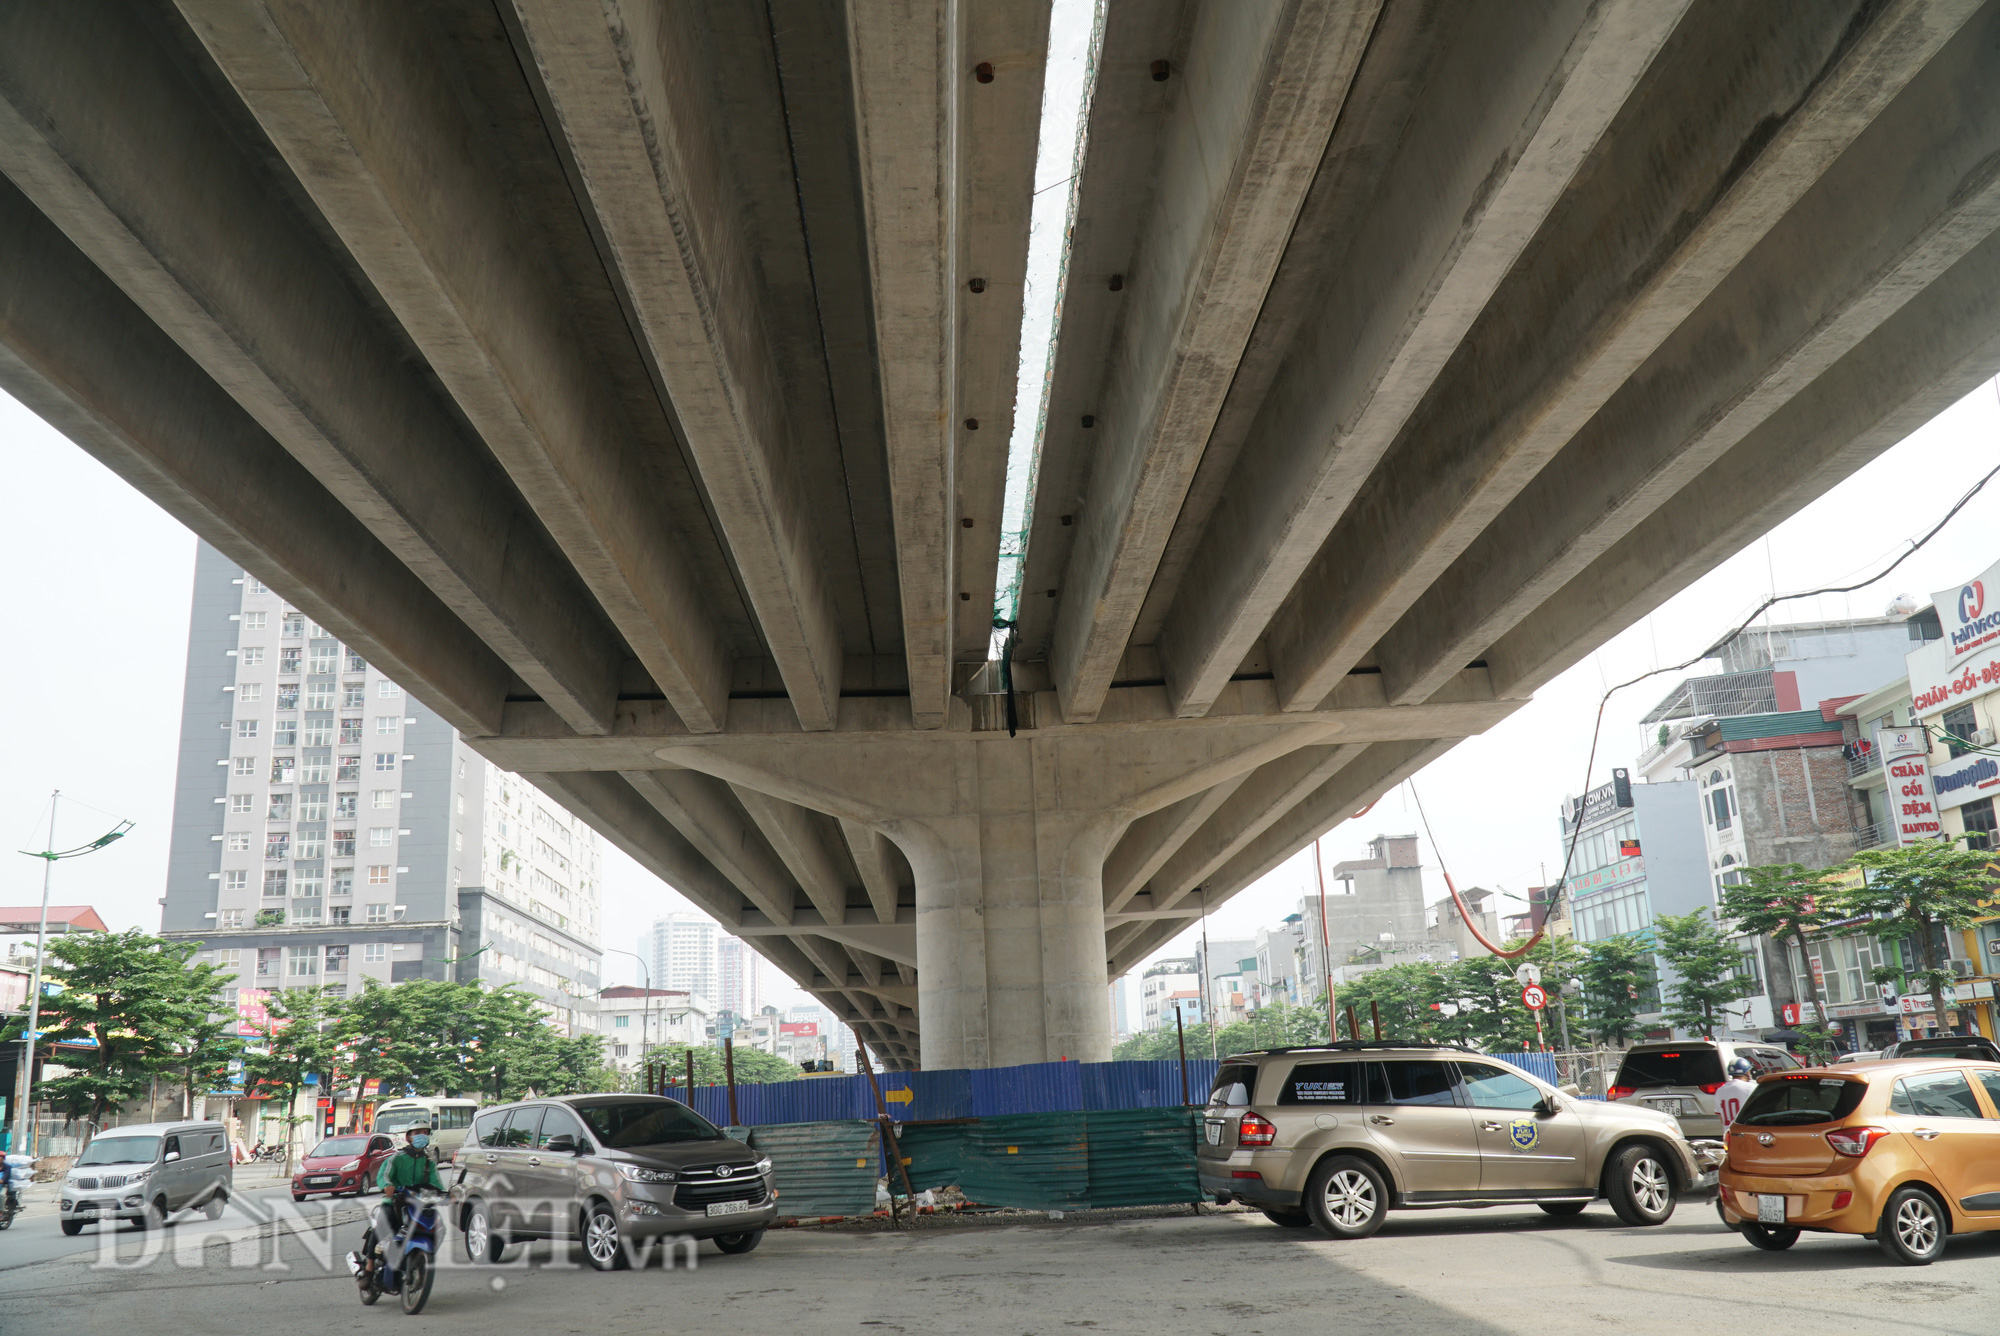 Hà Nội sắp có cầu cạn hơn 5000 tỷ nối cầu vượt Mai Dịch và cầu Thăng Long - Ảnh 8.